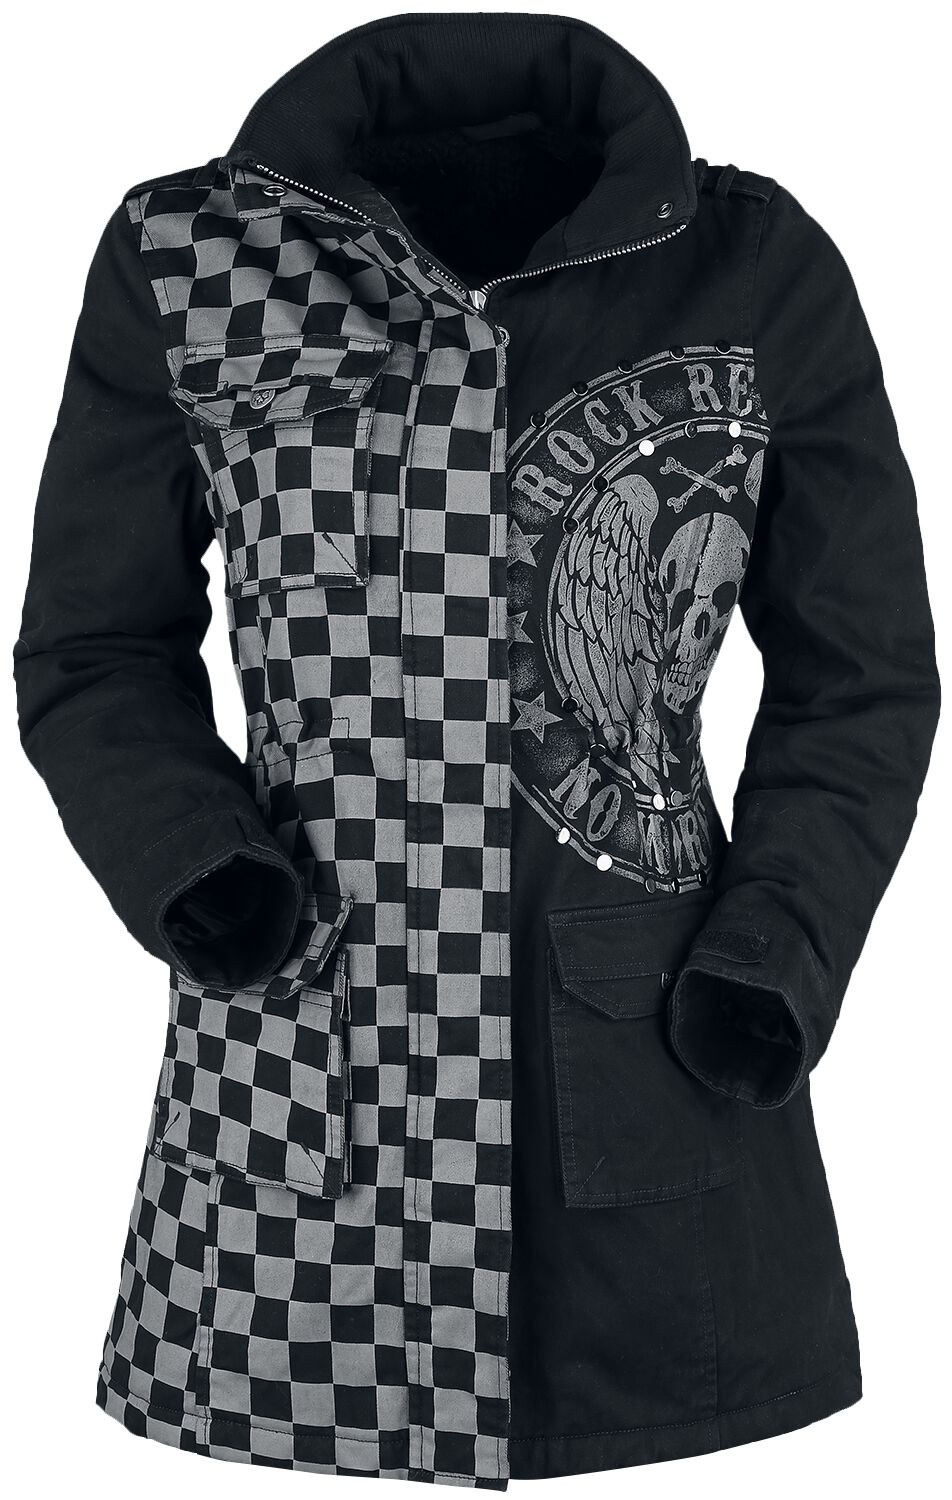 Rock Rebel by EMP schwarz/graue Jacke mit Nieten und Print Winterjacke grau schwarz in M von Rock Rebel by EMP